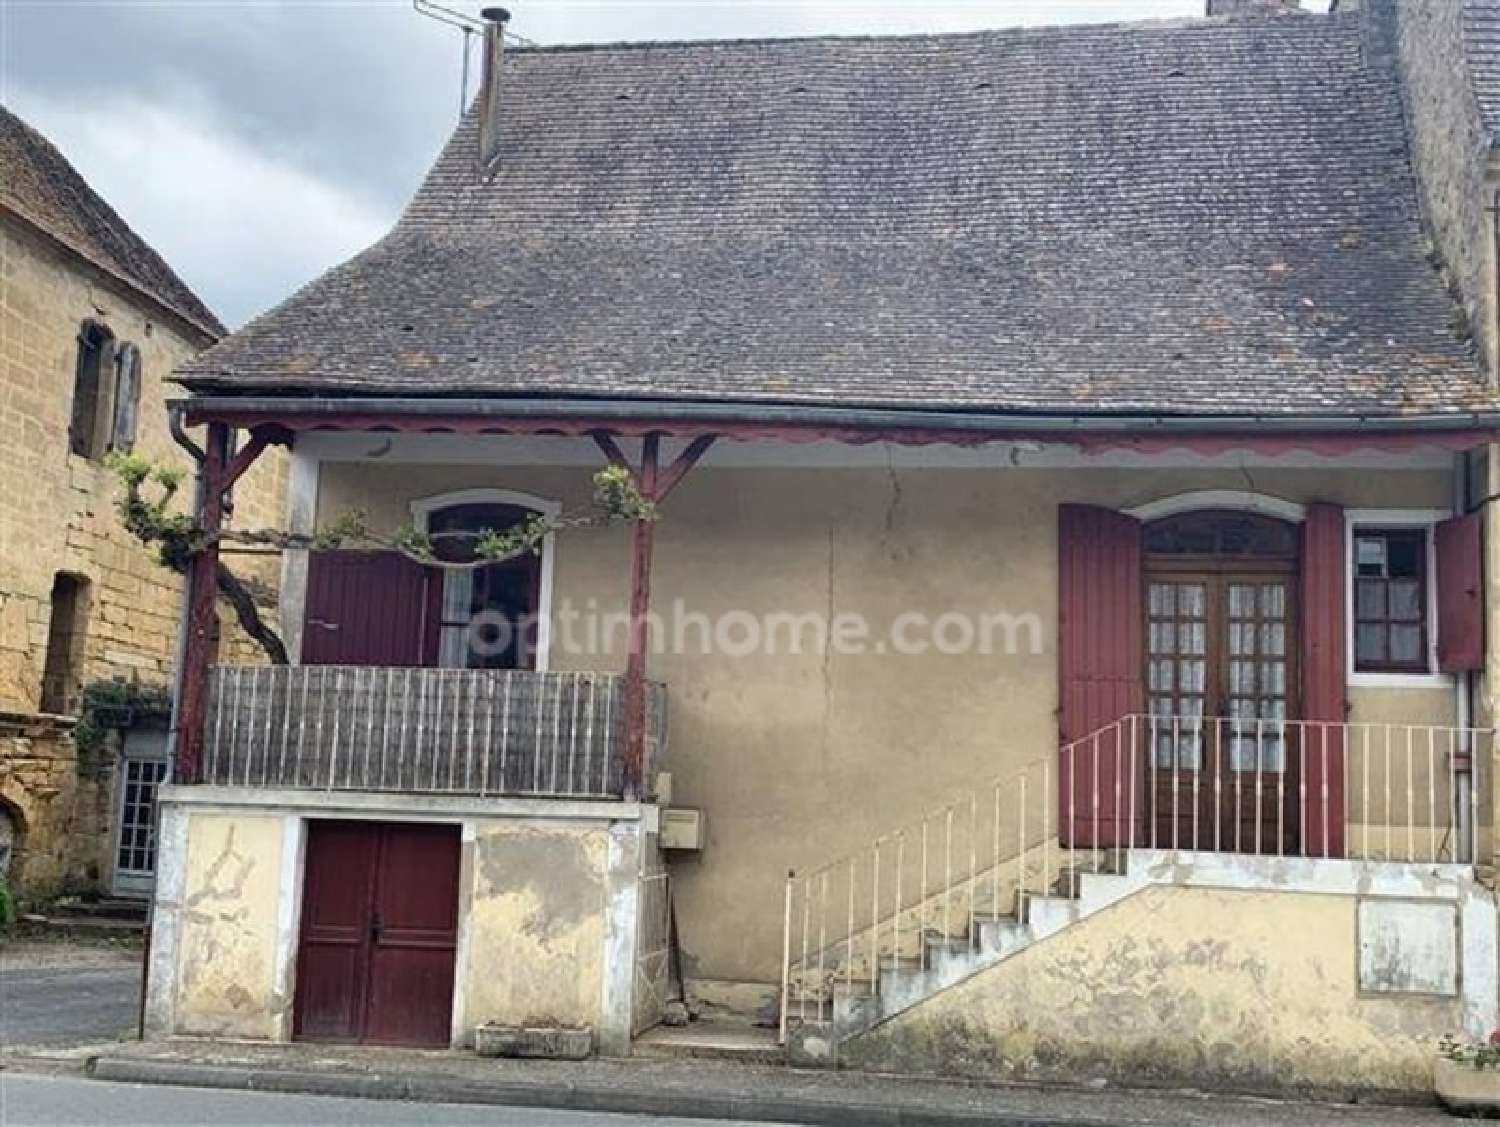  à vendre maison de village Saint-Pompont Dordogne 1